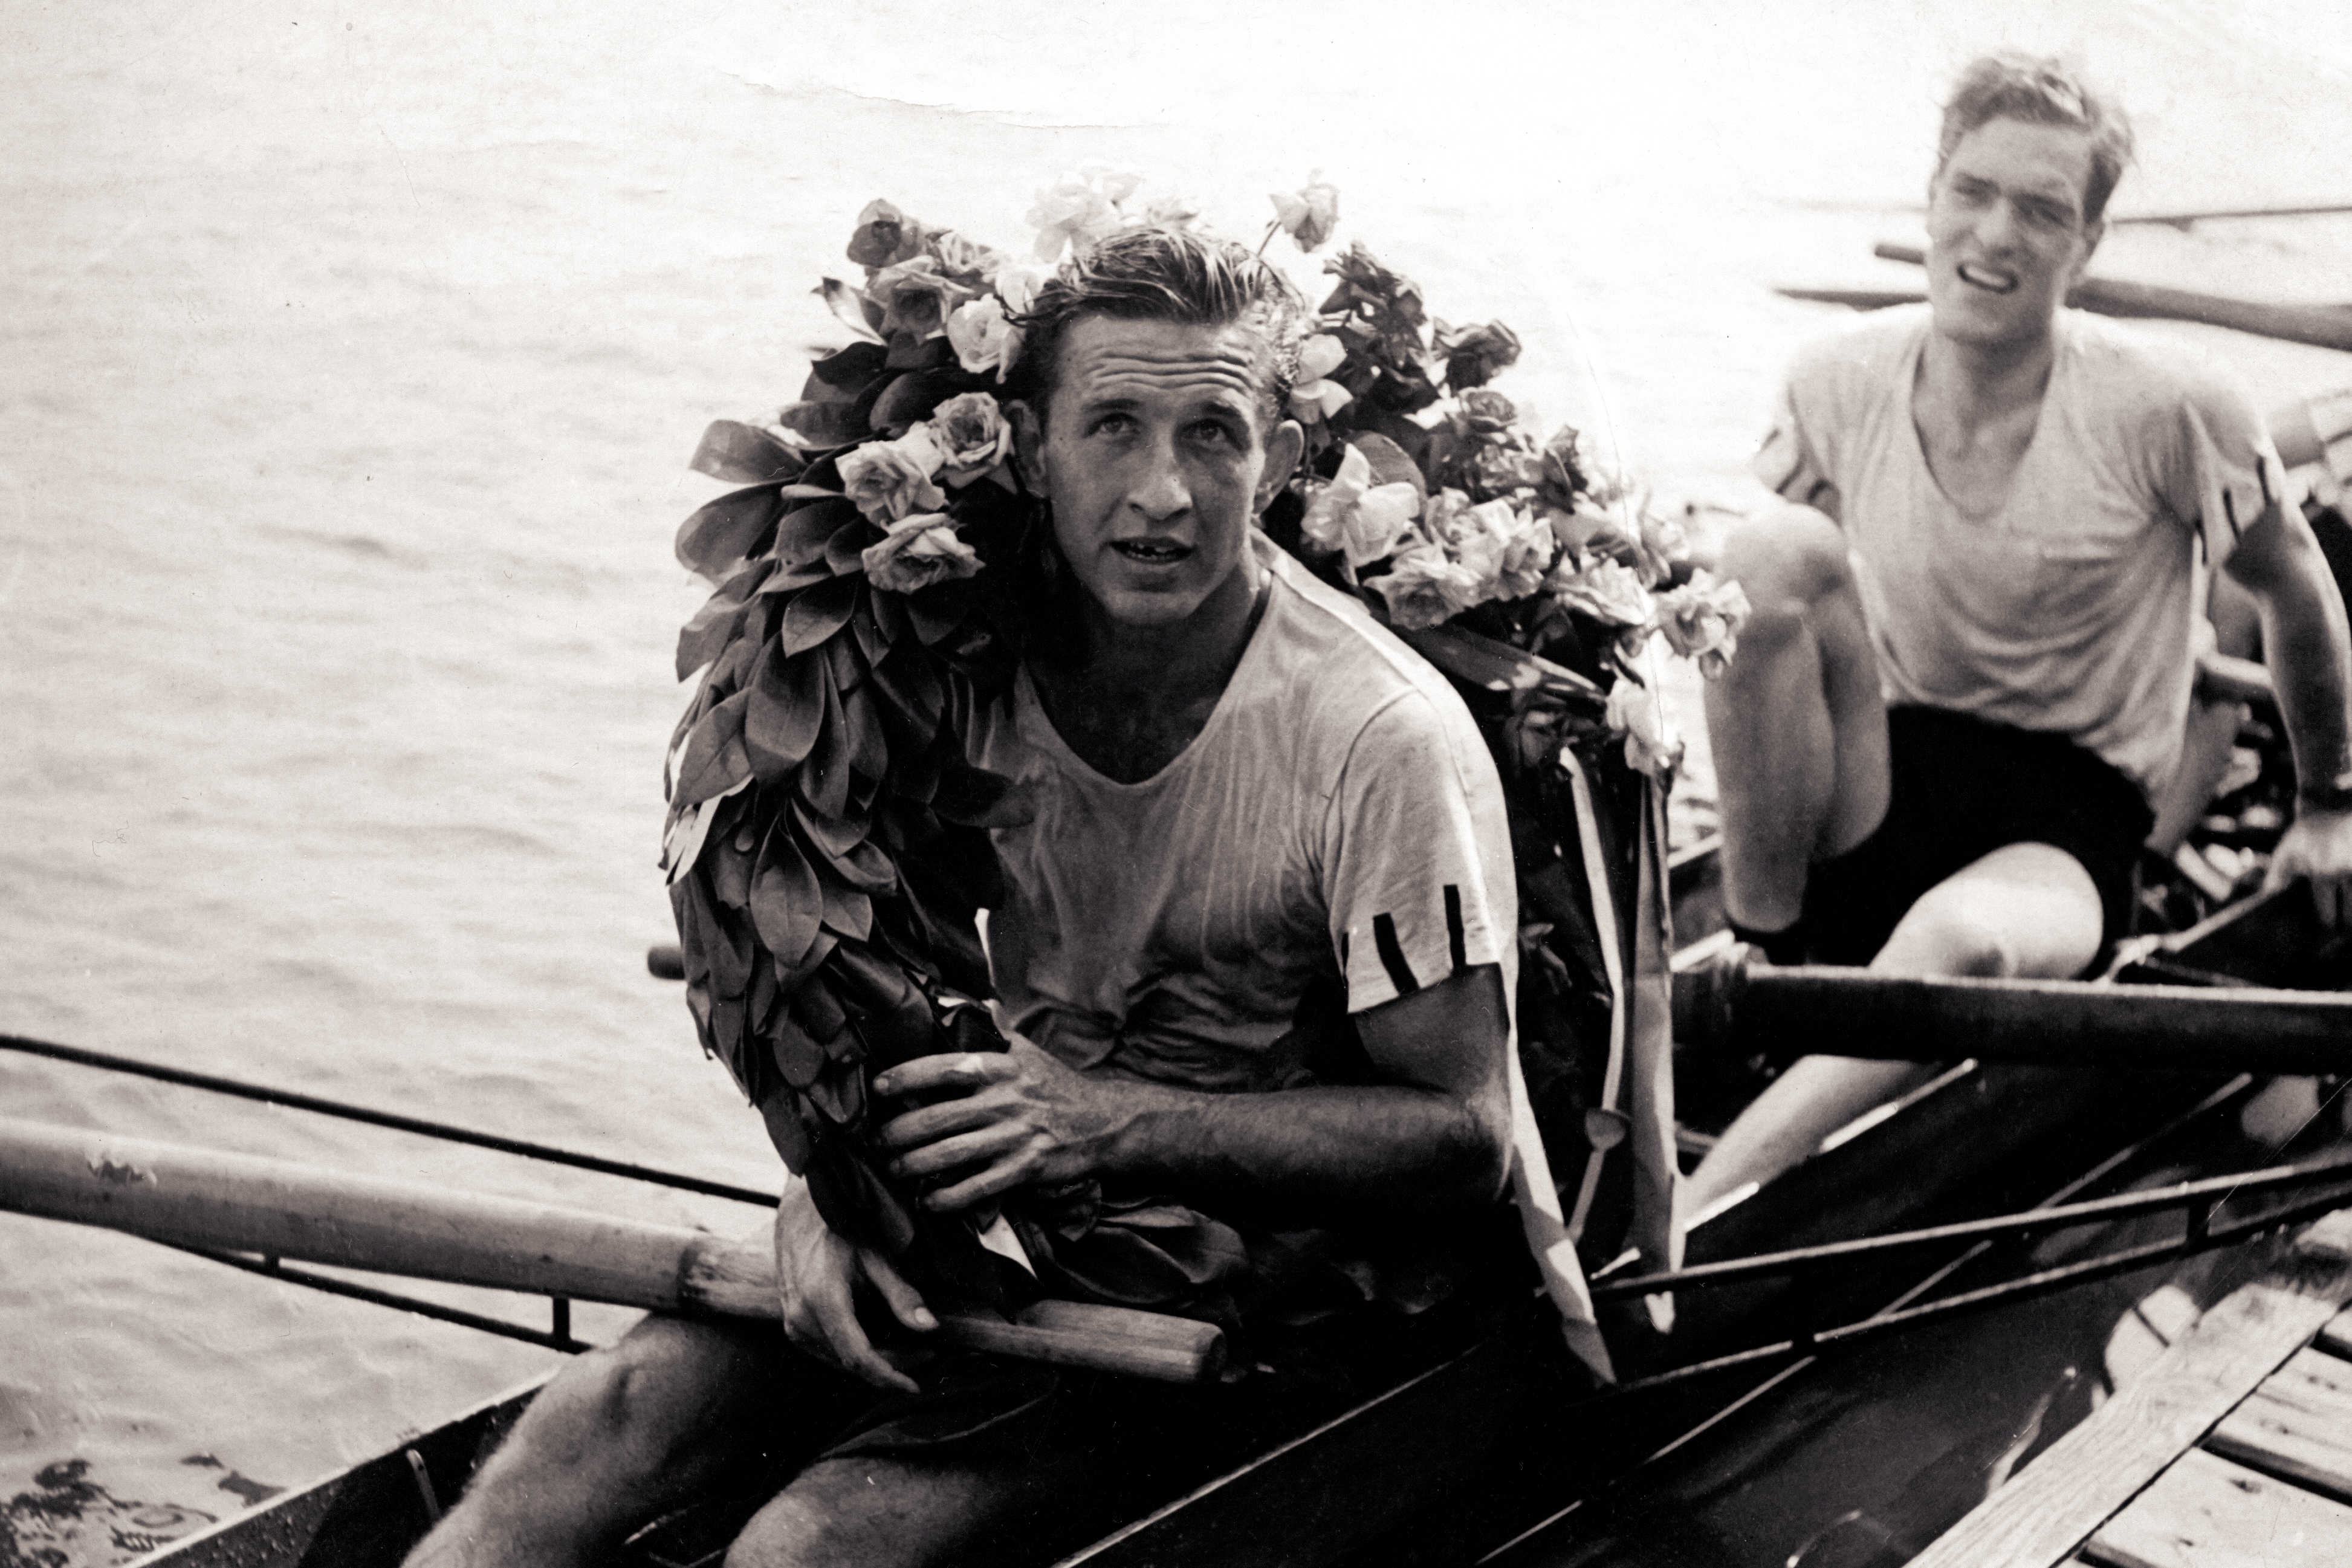 Oarsmen after a boat race in 1947